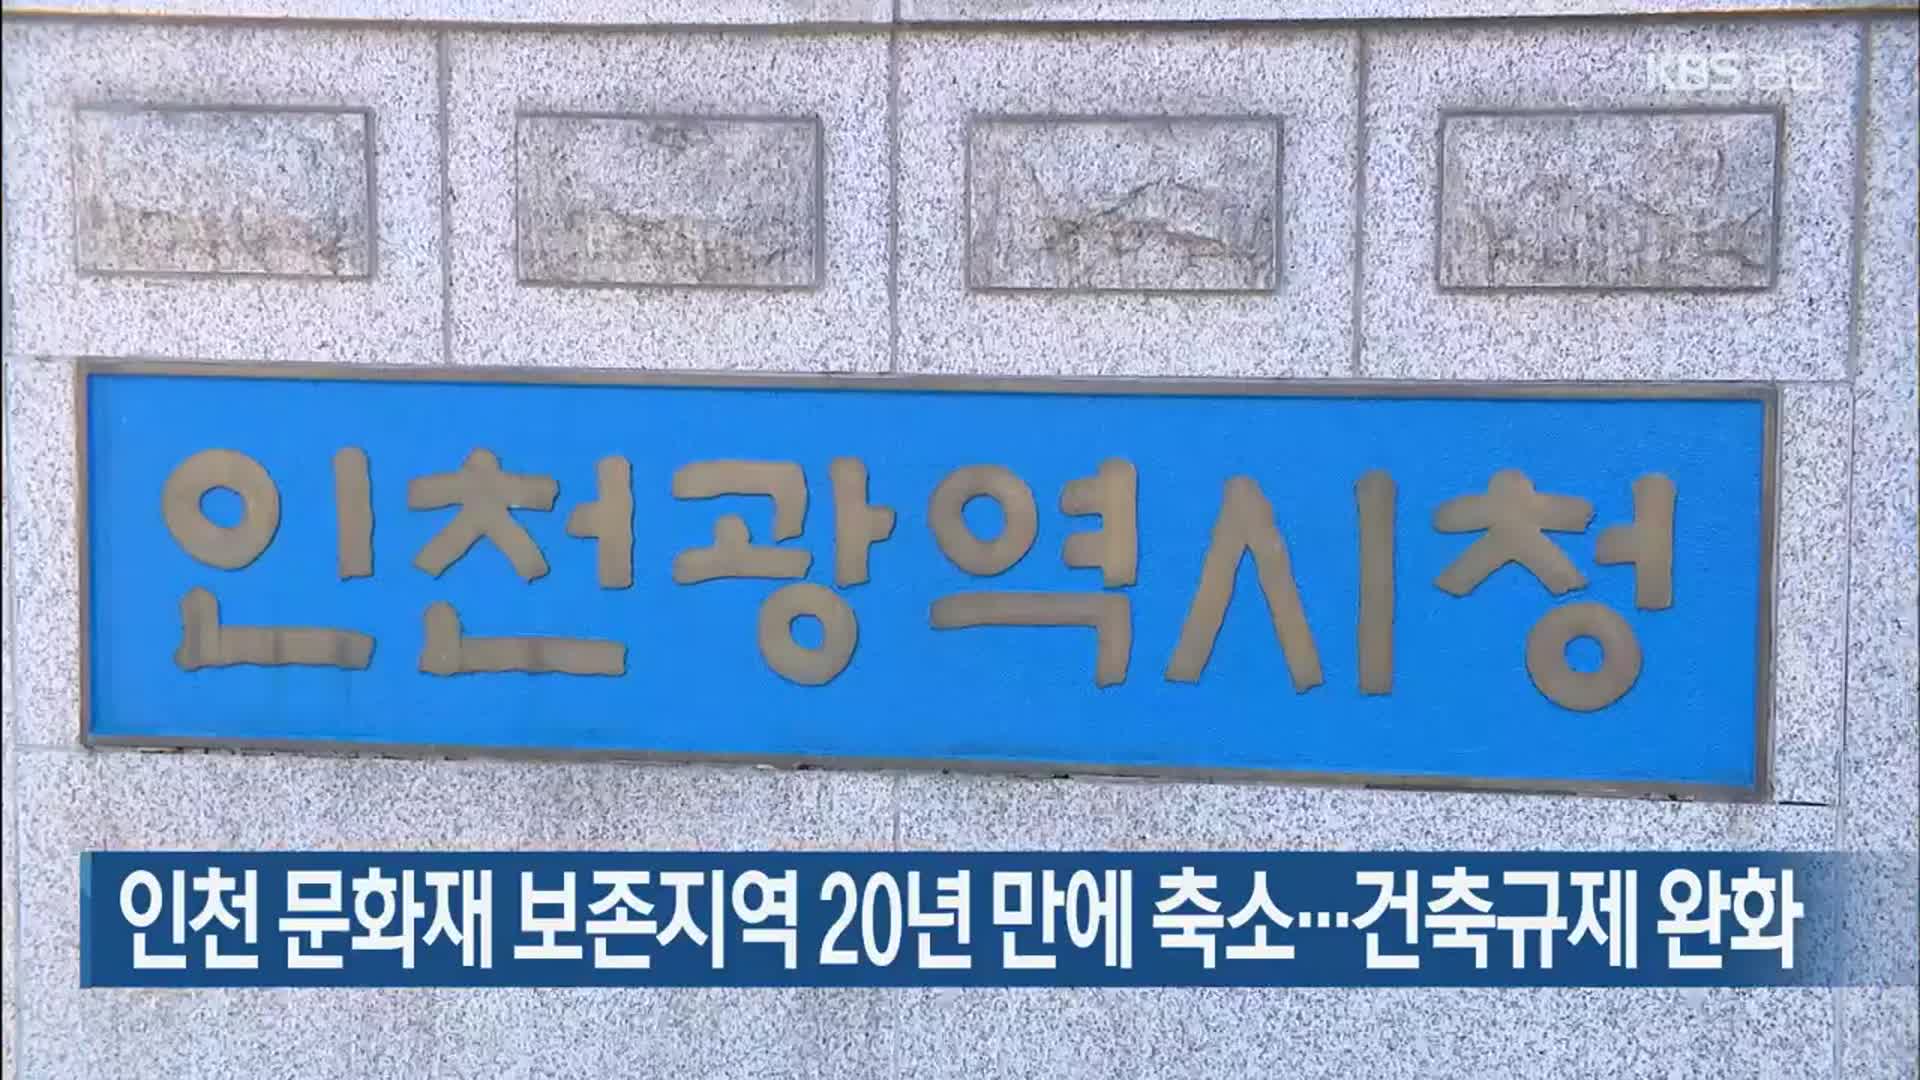 인천 문화재 보존지역 20년 만에 축소…건축규제 완화